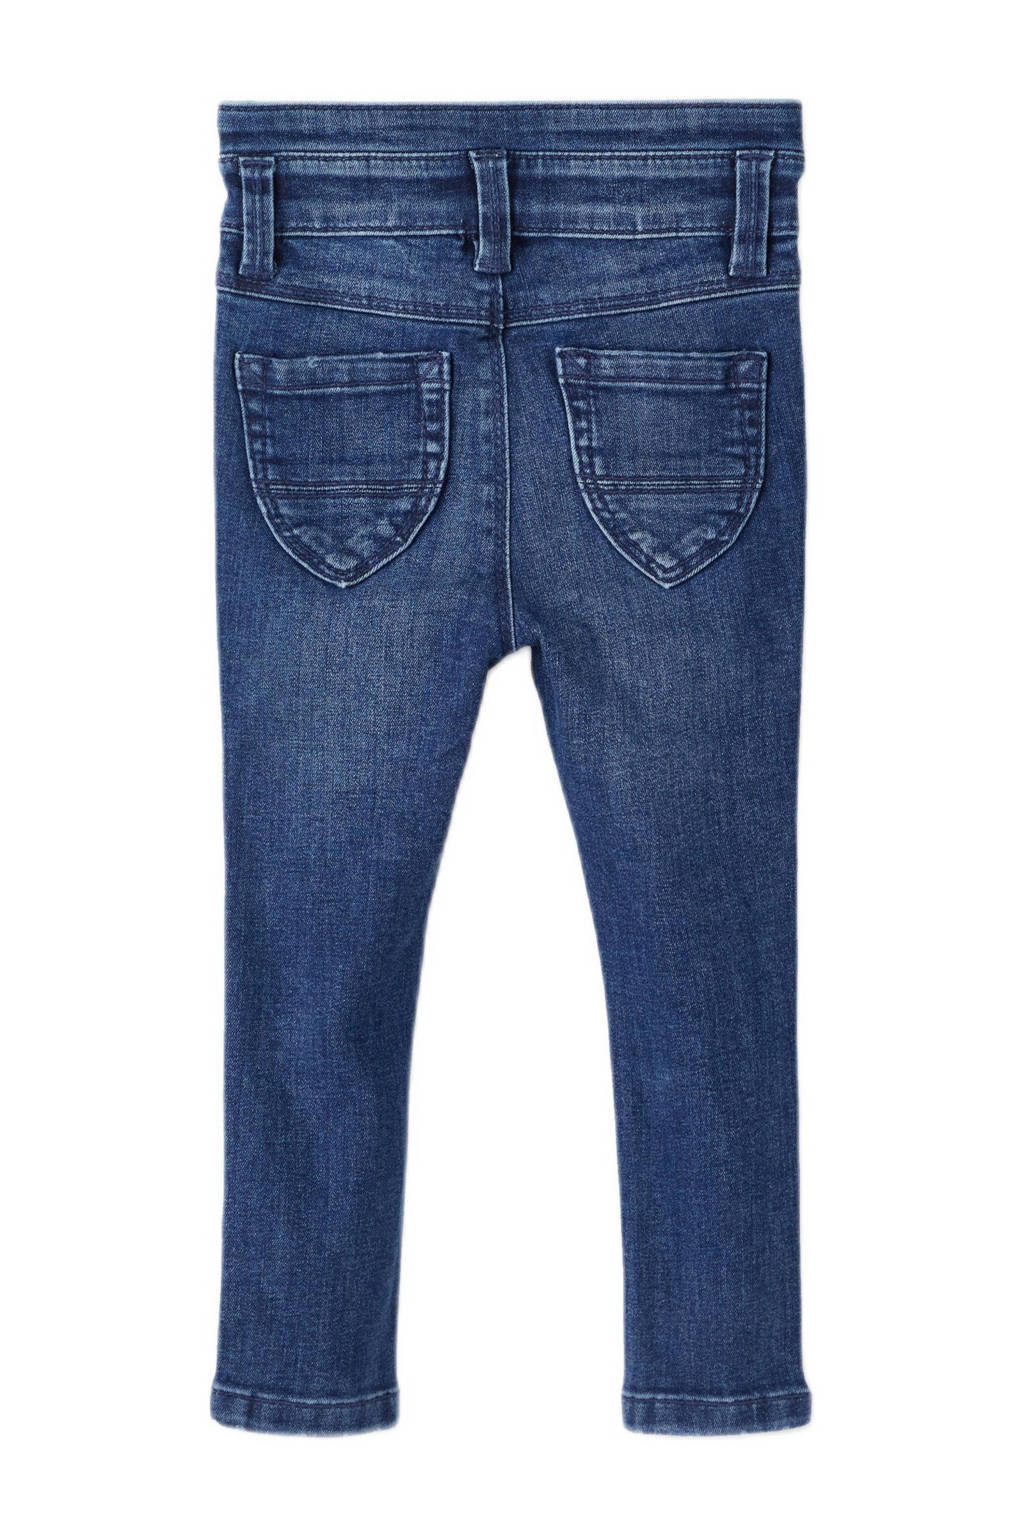 dark IT jeans skinny blue MINI NMFPOLLY NAME denim